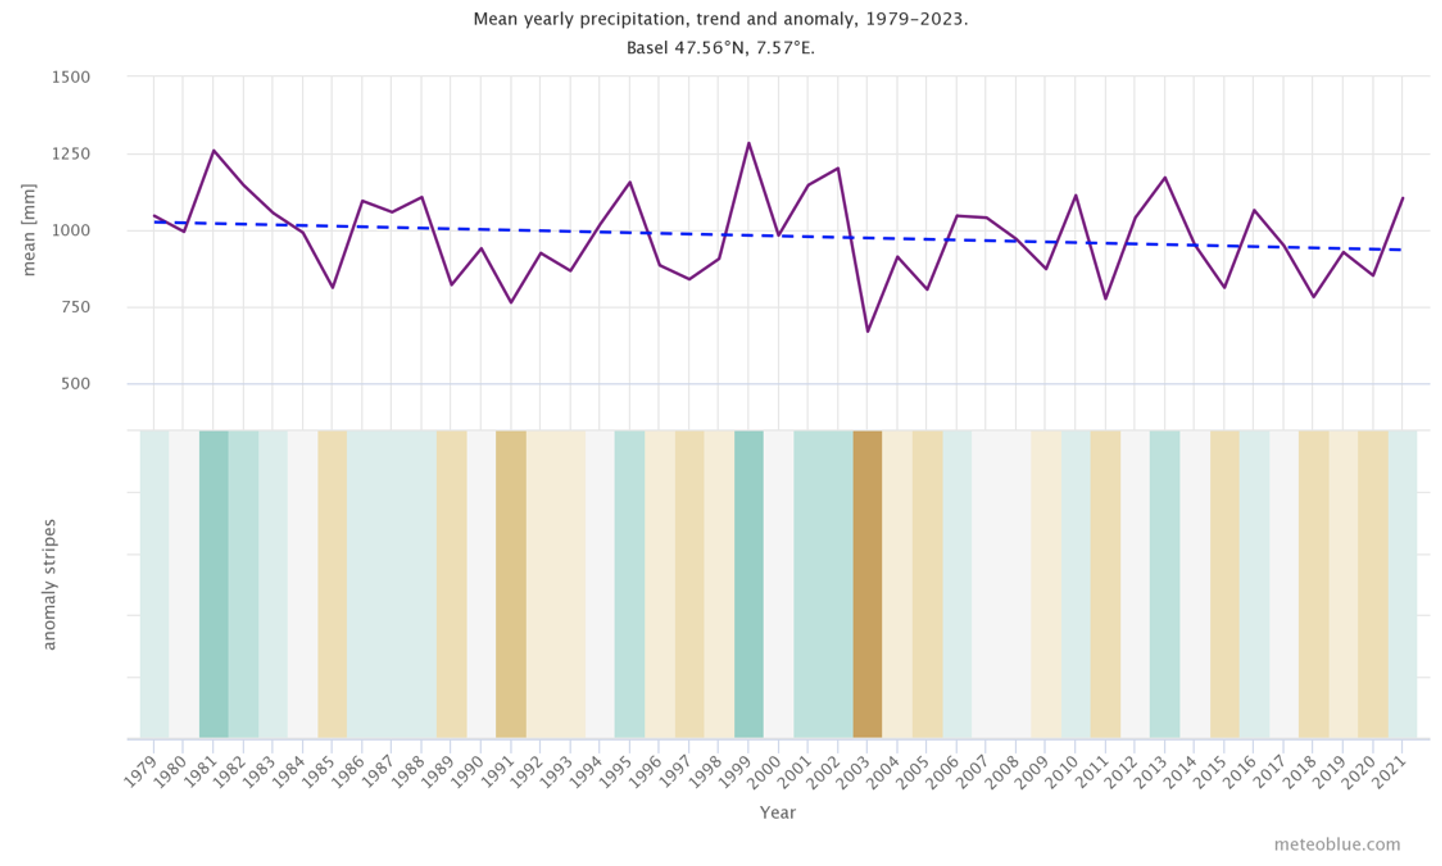 Précipitations annuelles moyennes, tendance et anomalie pour Bâle, Suisse.